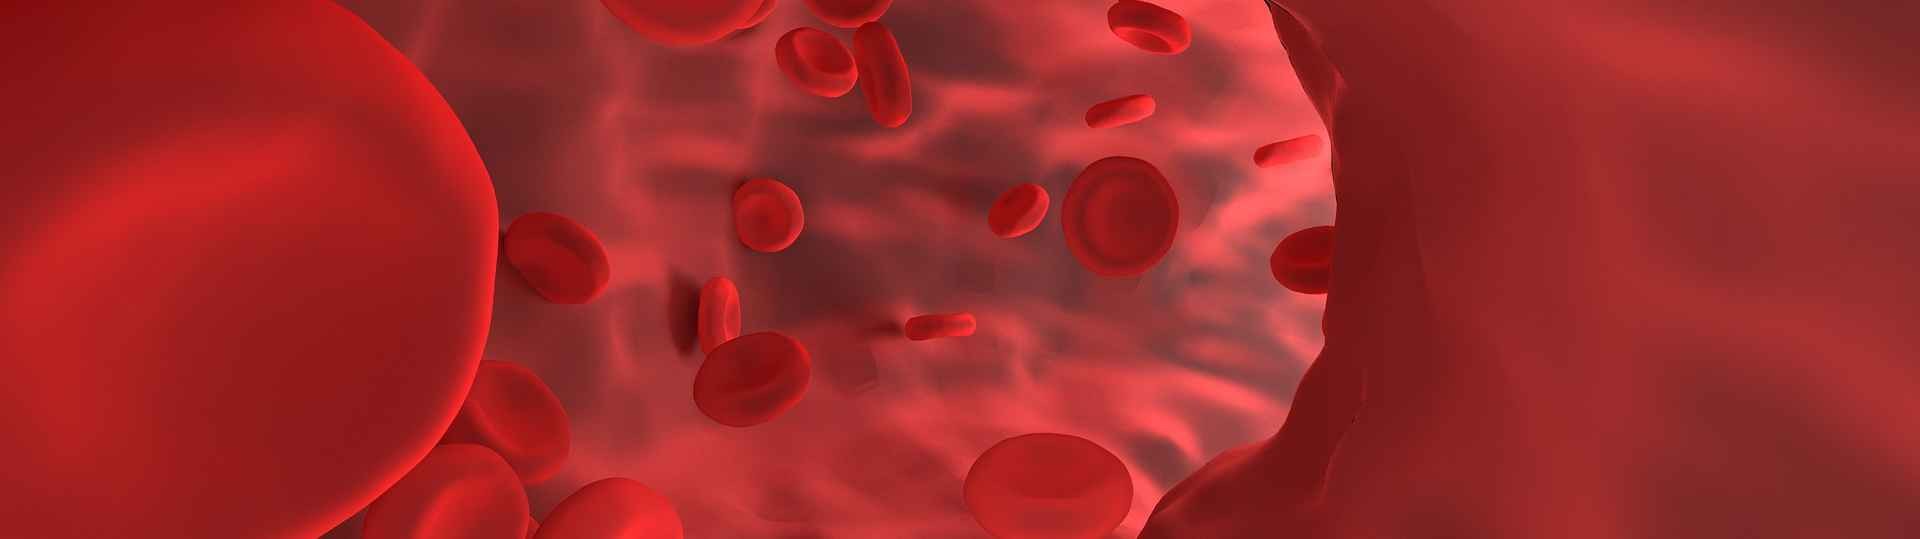 La creación de células madre sanguíneas artificiales podría eliminar la necesidad de donantes